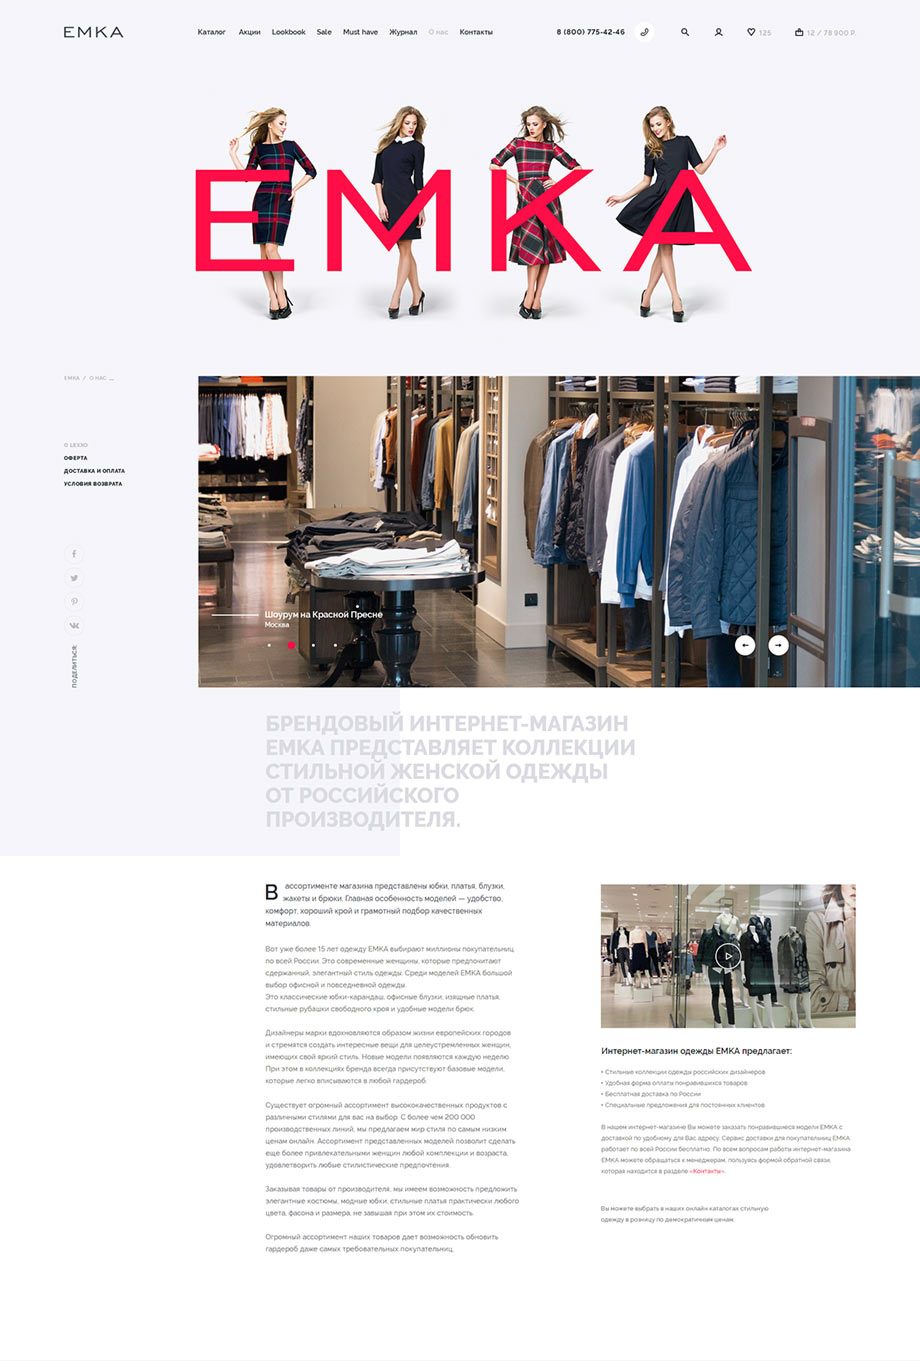 Дизайн раздела «О нас» розничного интернет-магазина женской одежды Emka.